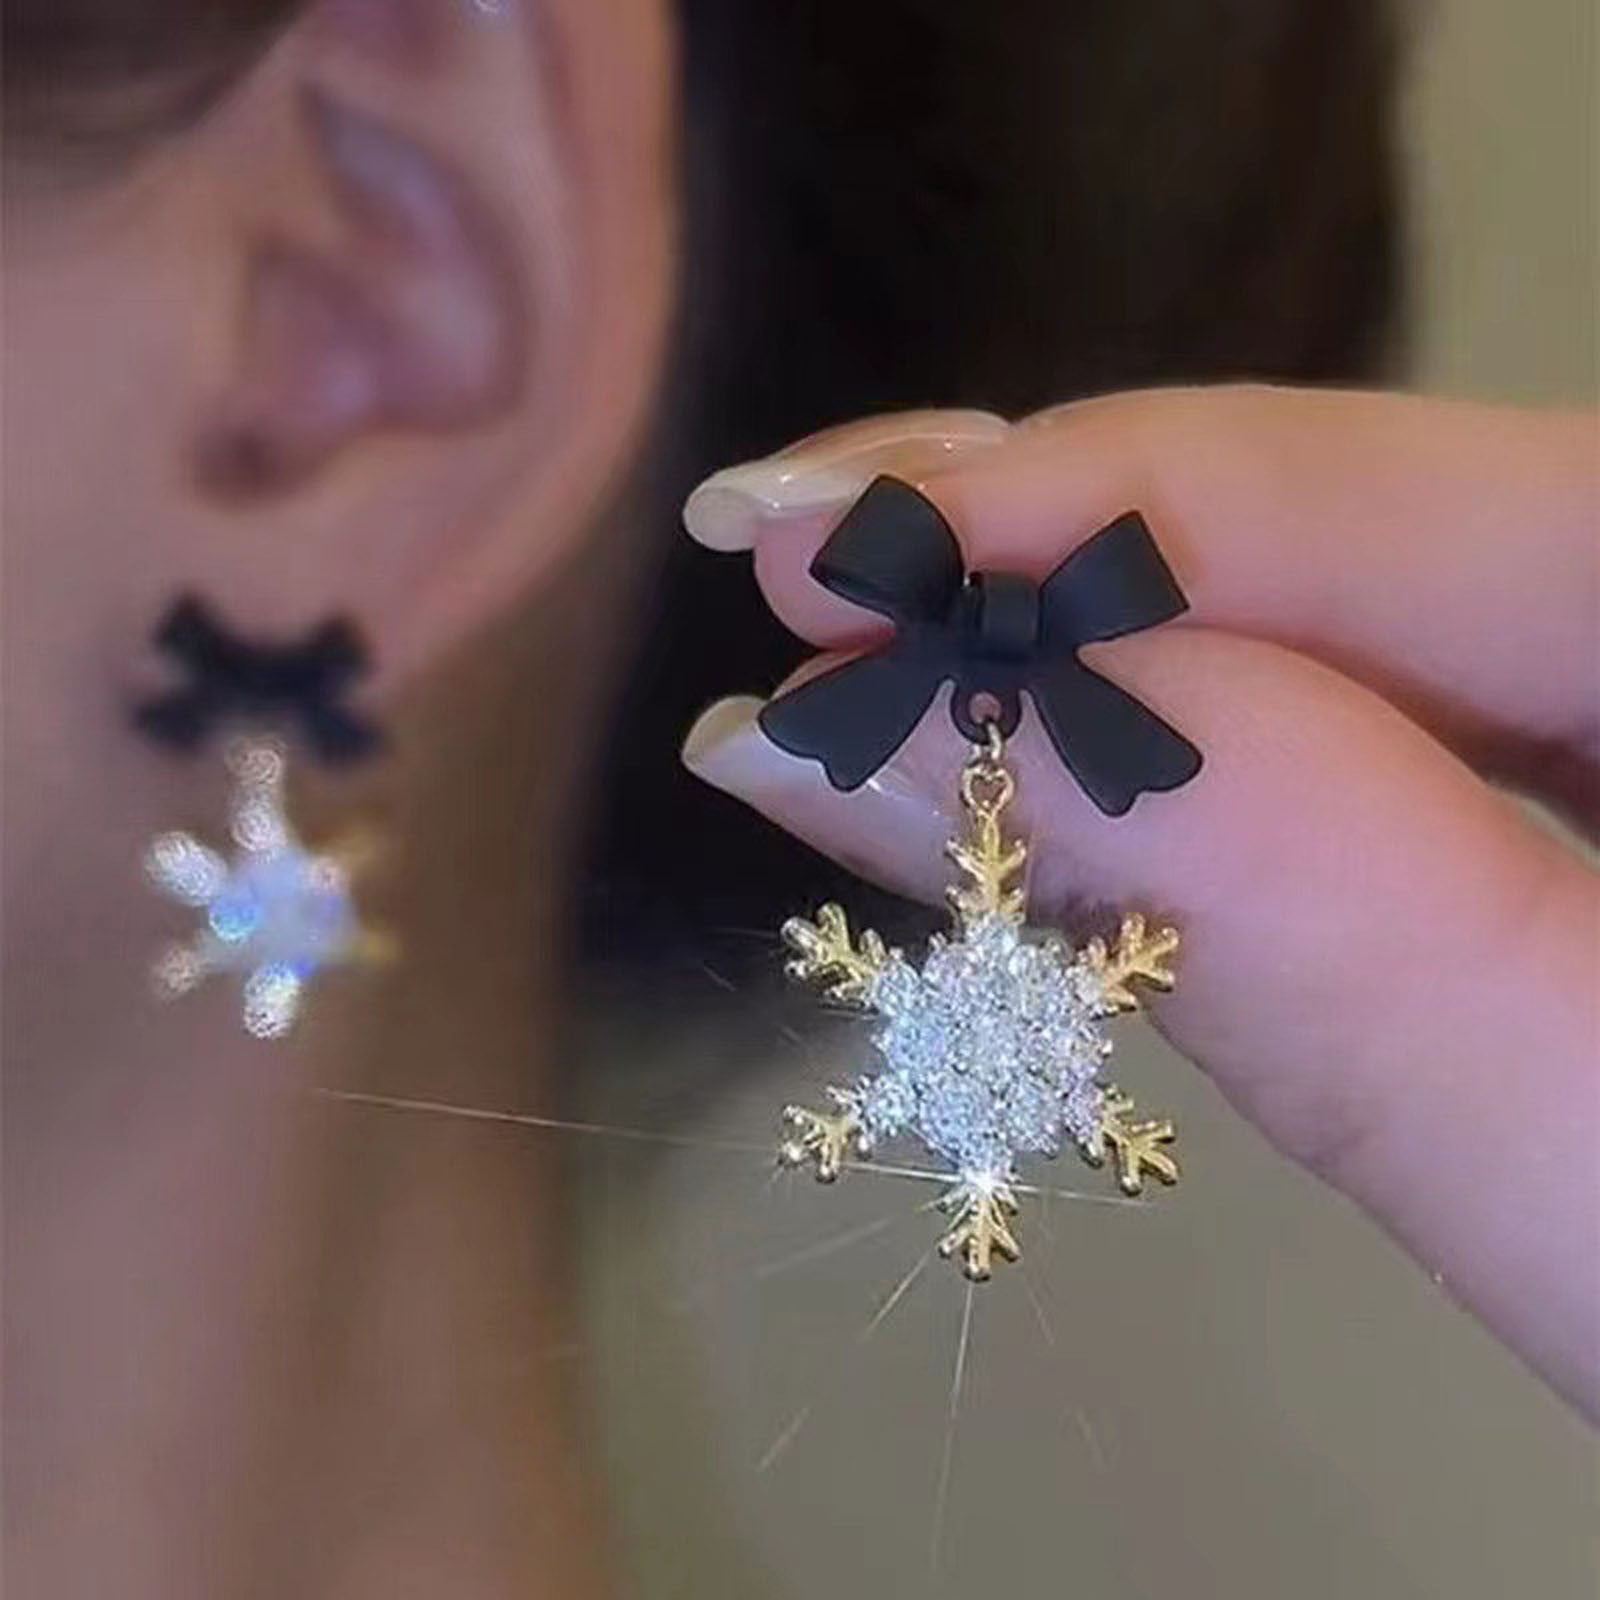 Accessorize Snowflake Pattern Drop Earrings 1.5cm Diameter on Hooks Metal Very Pretty 